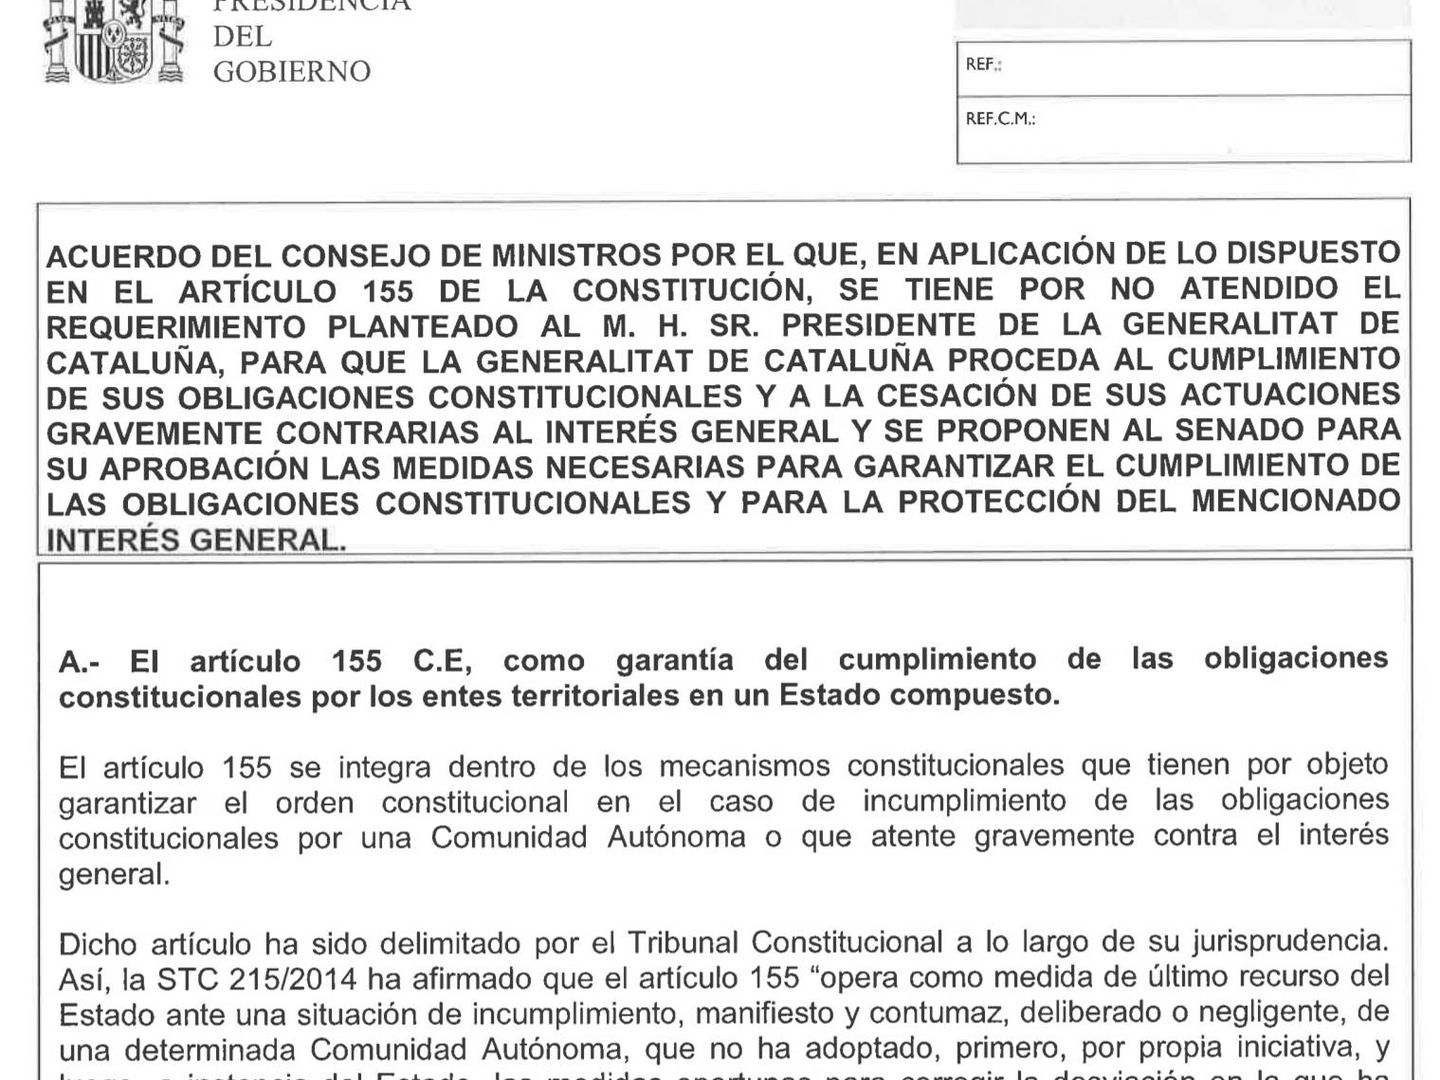 Haga clic para leer el acuerdo del Consejo de Ministros para aplicar el artículo 155 en Cataluña